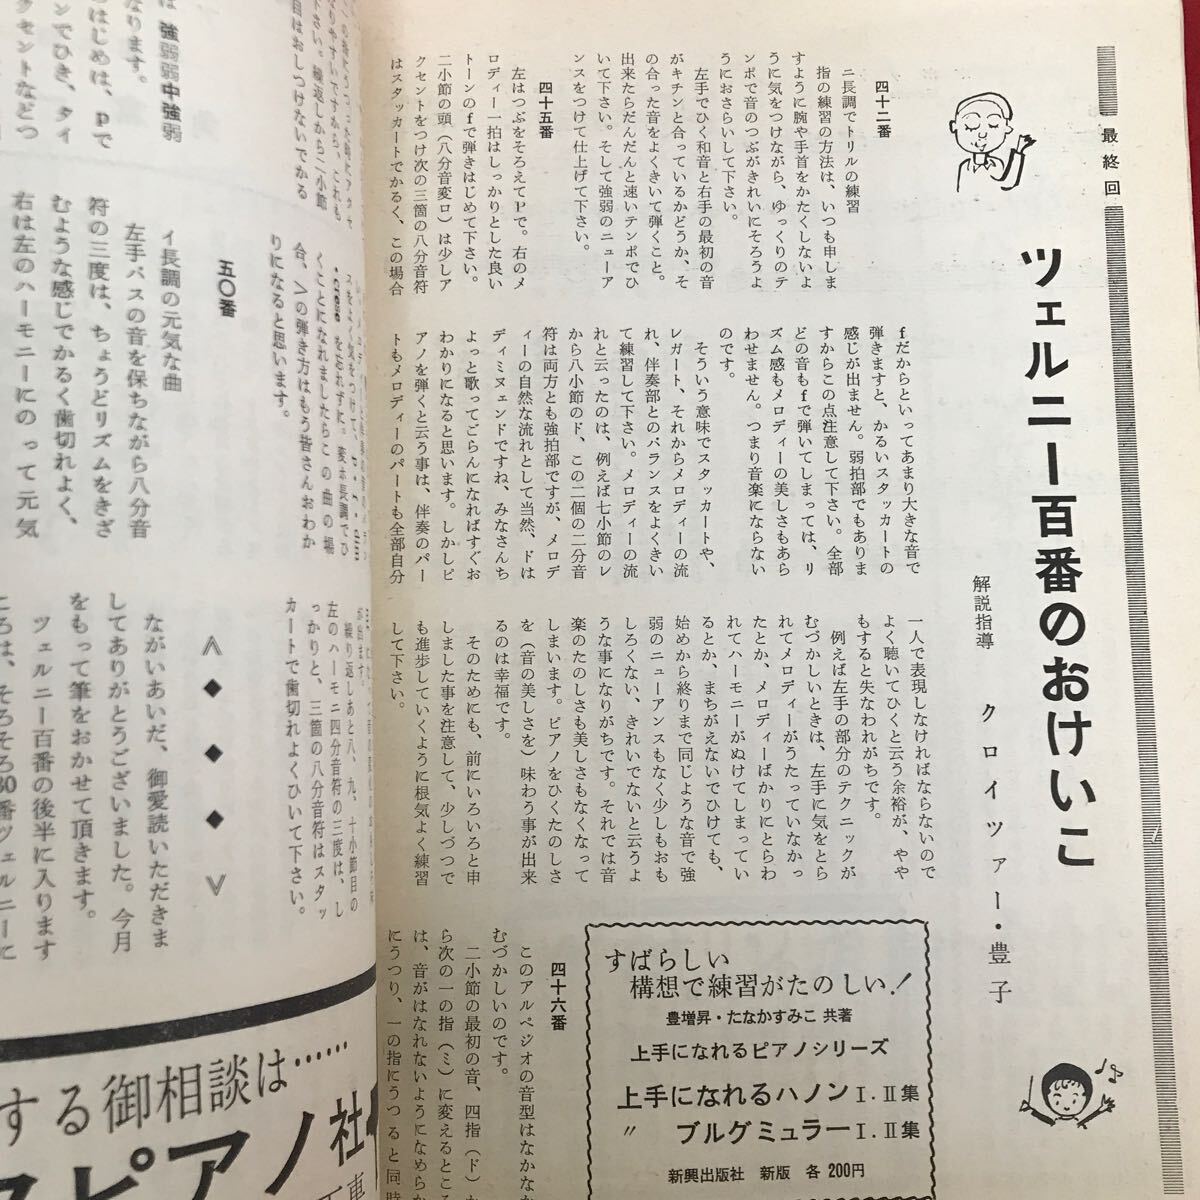 i-443 ※9 / 月刊 レッスンの友 ママと私の雑誌 昭和40年11月28日発行 日本の子供の練習はこれでいいのか 初見に強くなるには_画像3